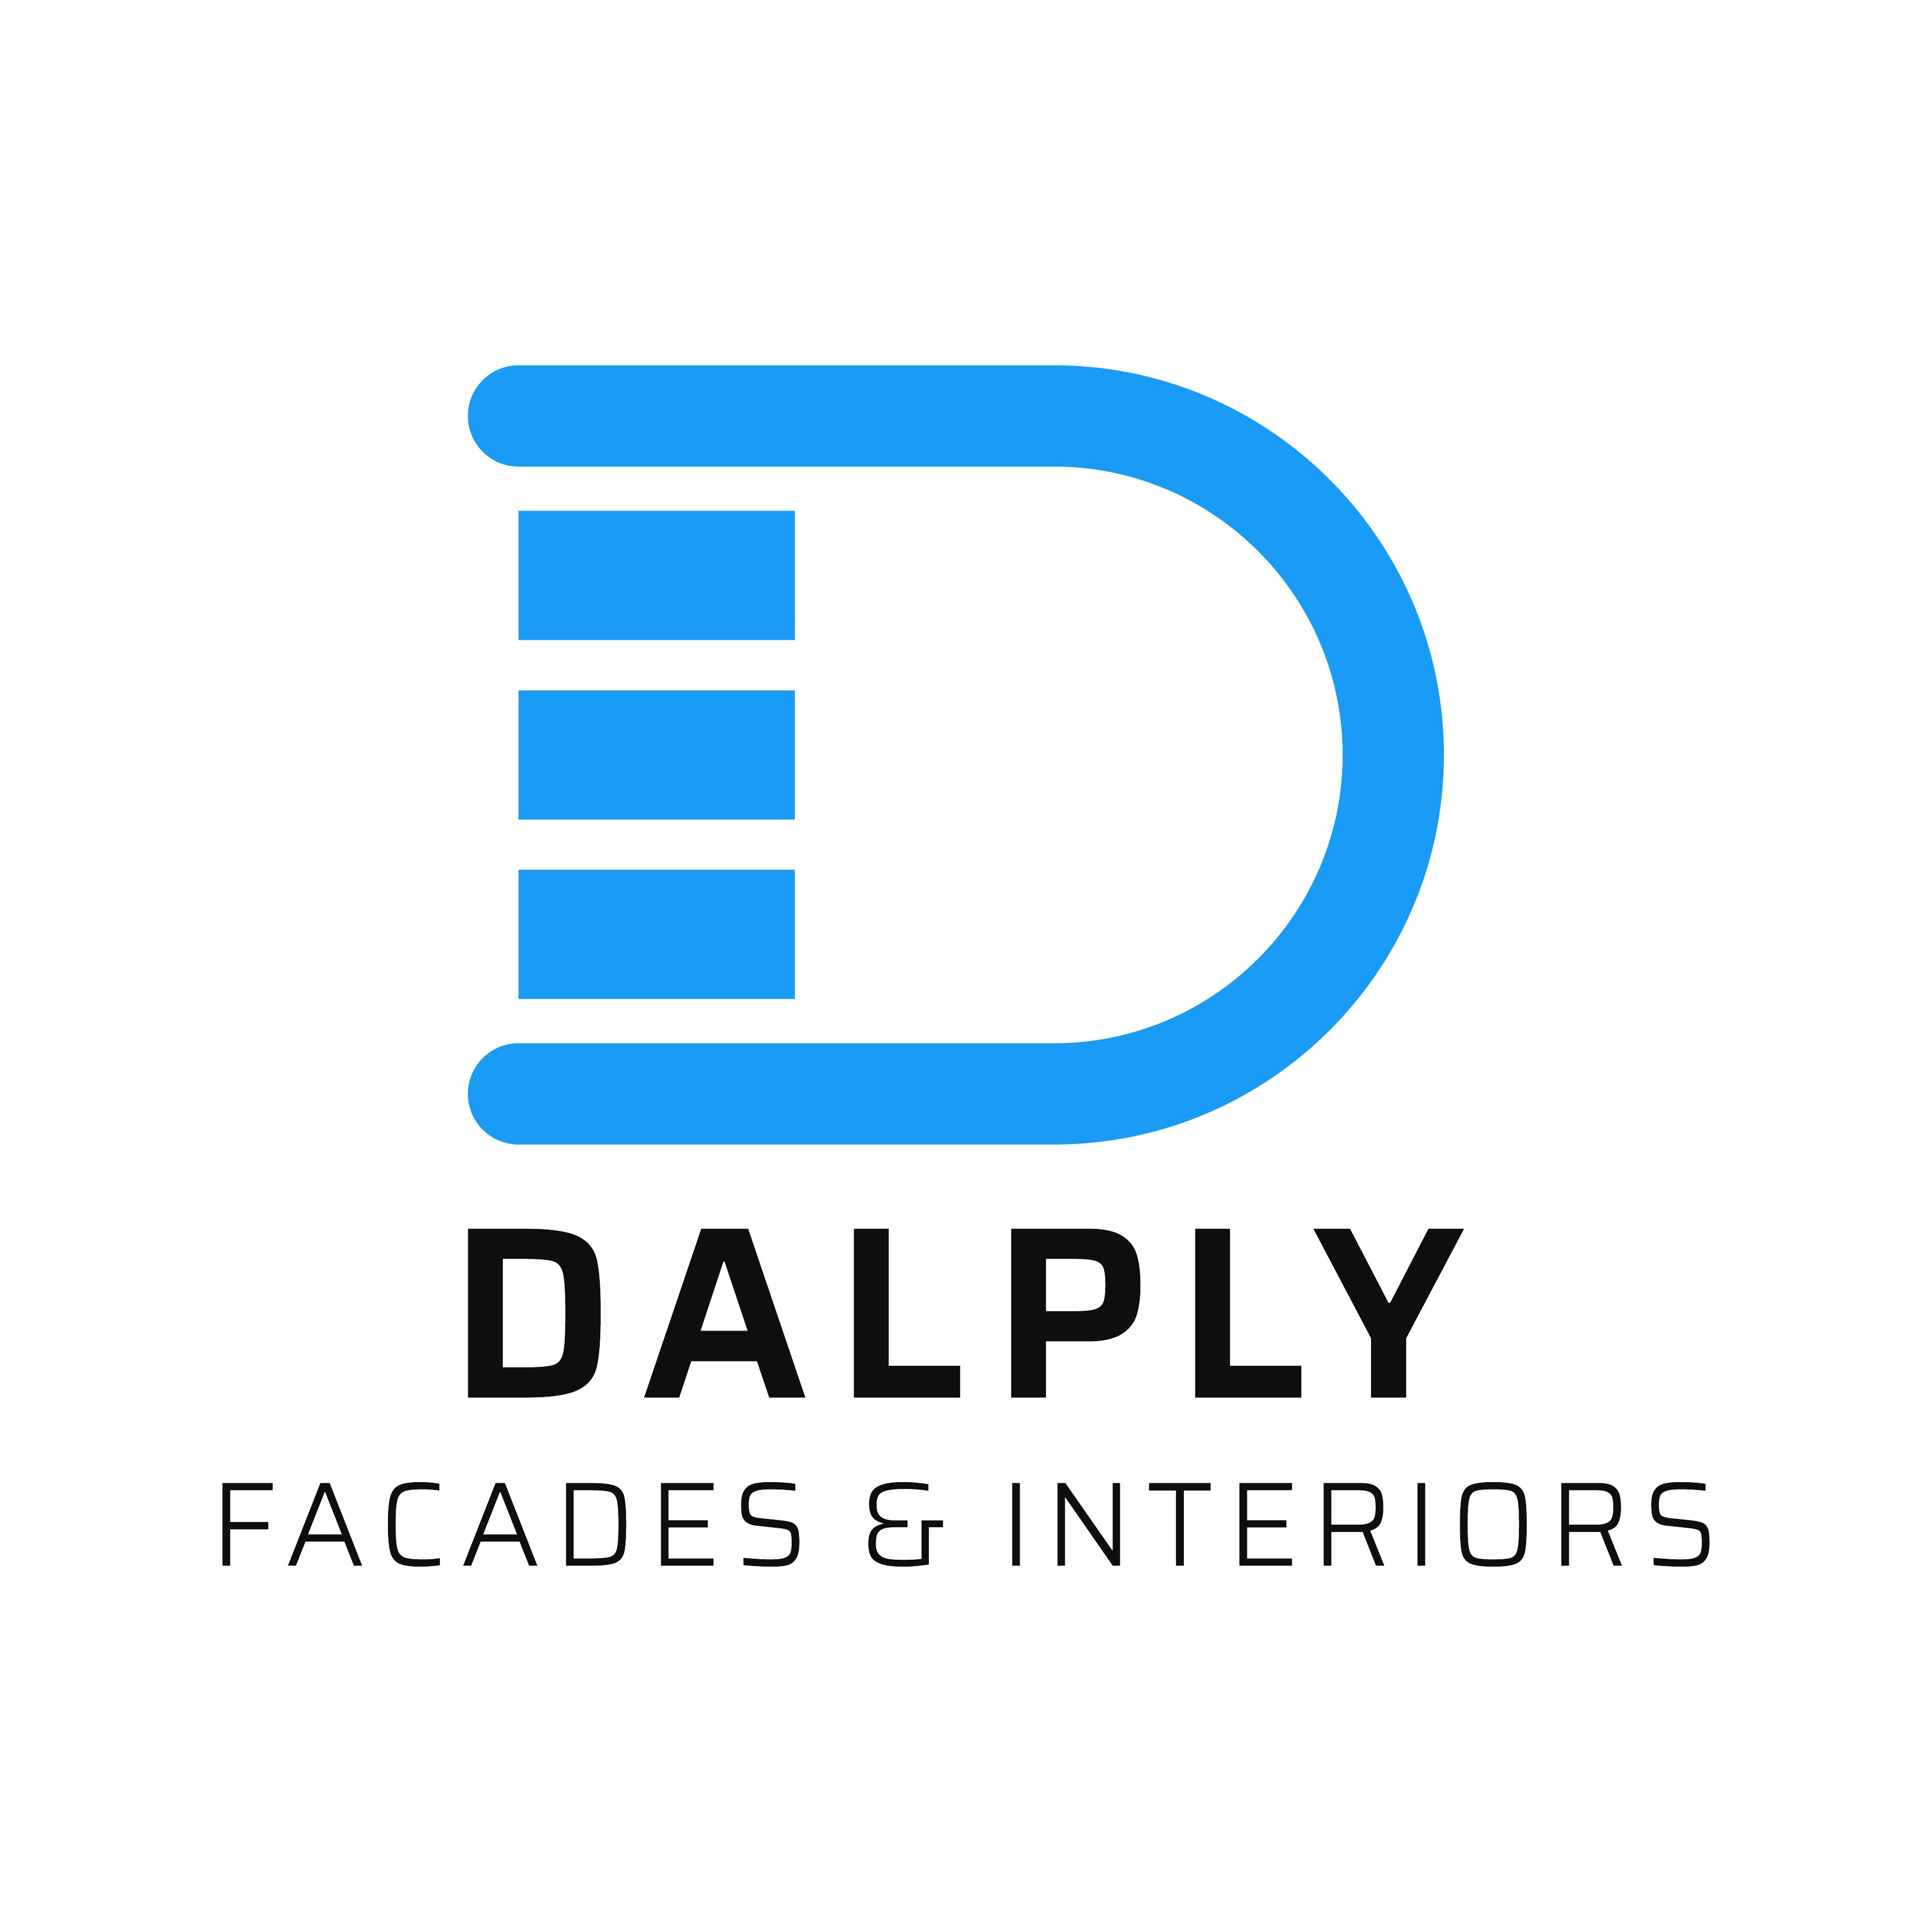 Dalply Facades & Interiors